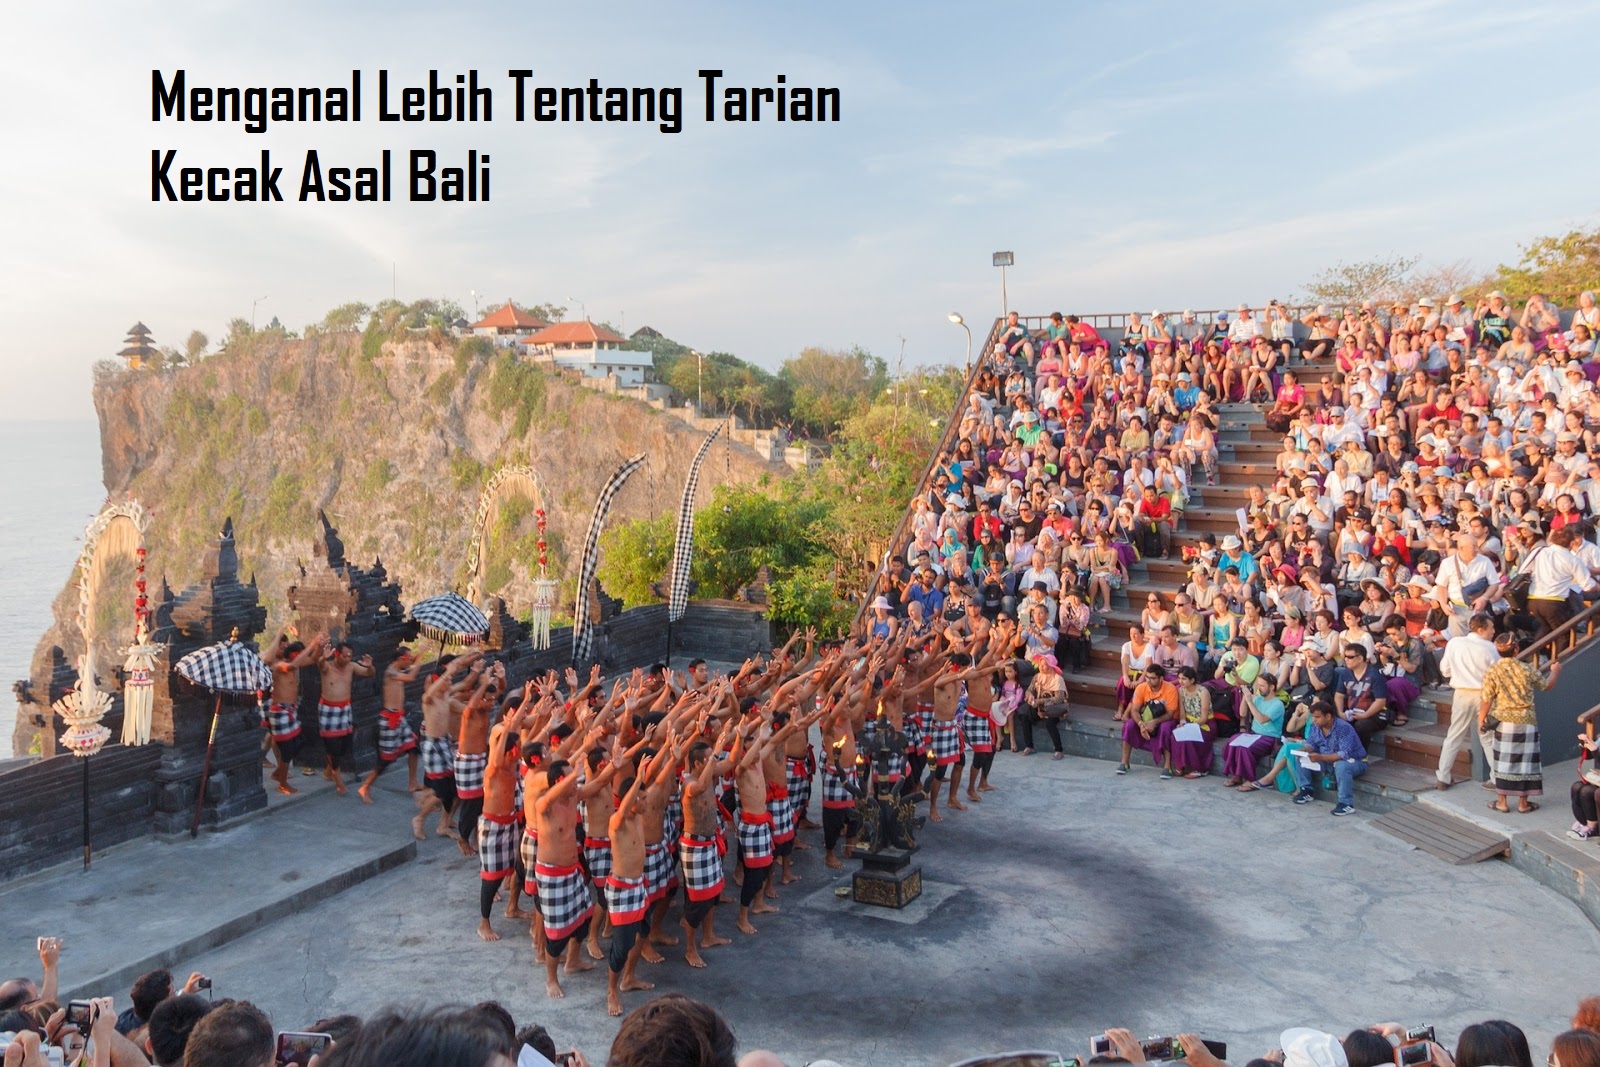 Menganal Lebih Tentang Tarian Kecak Asal Bali